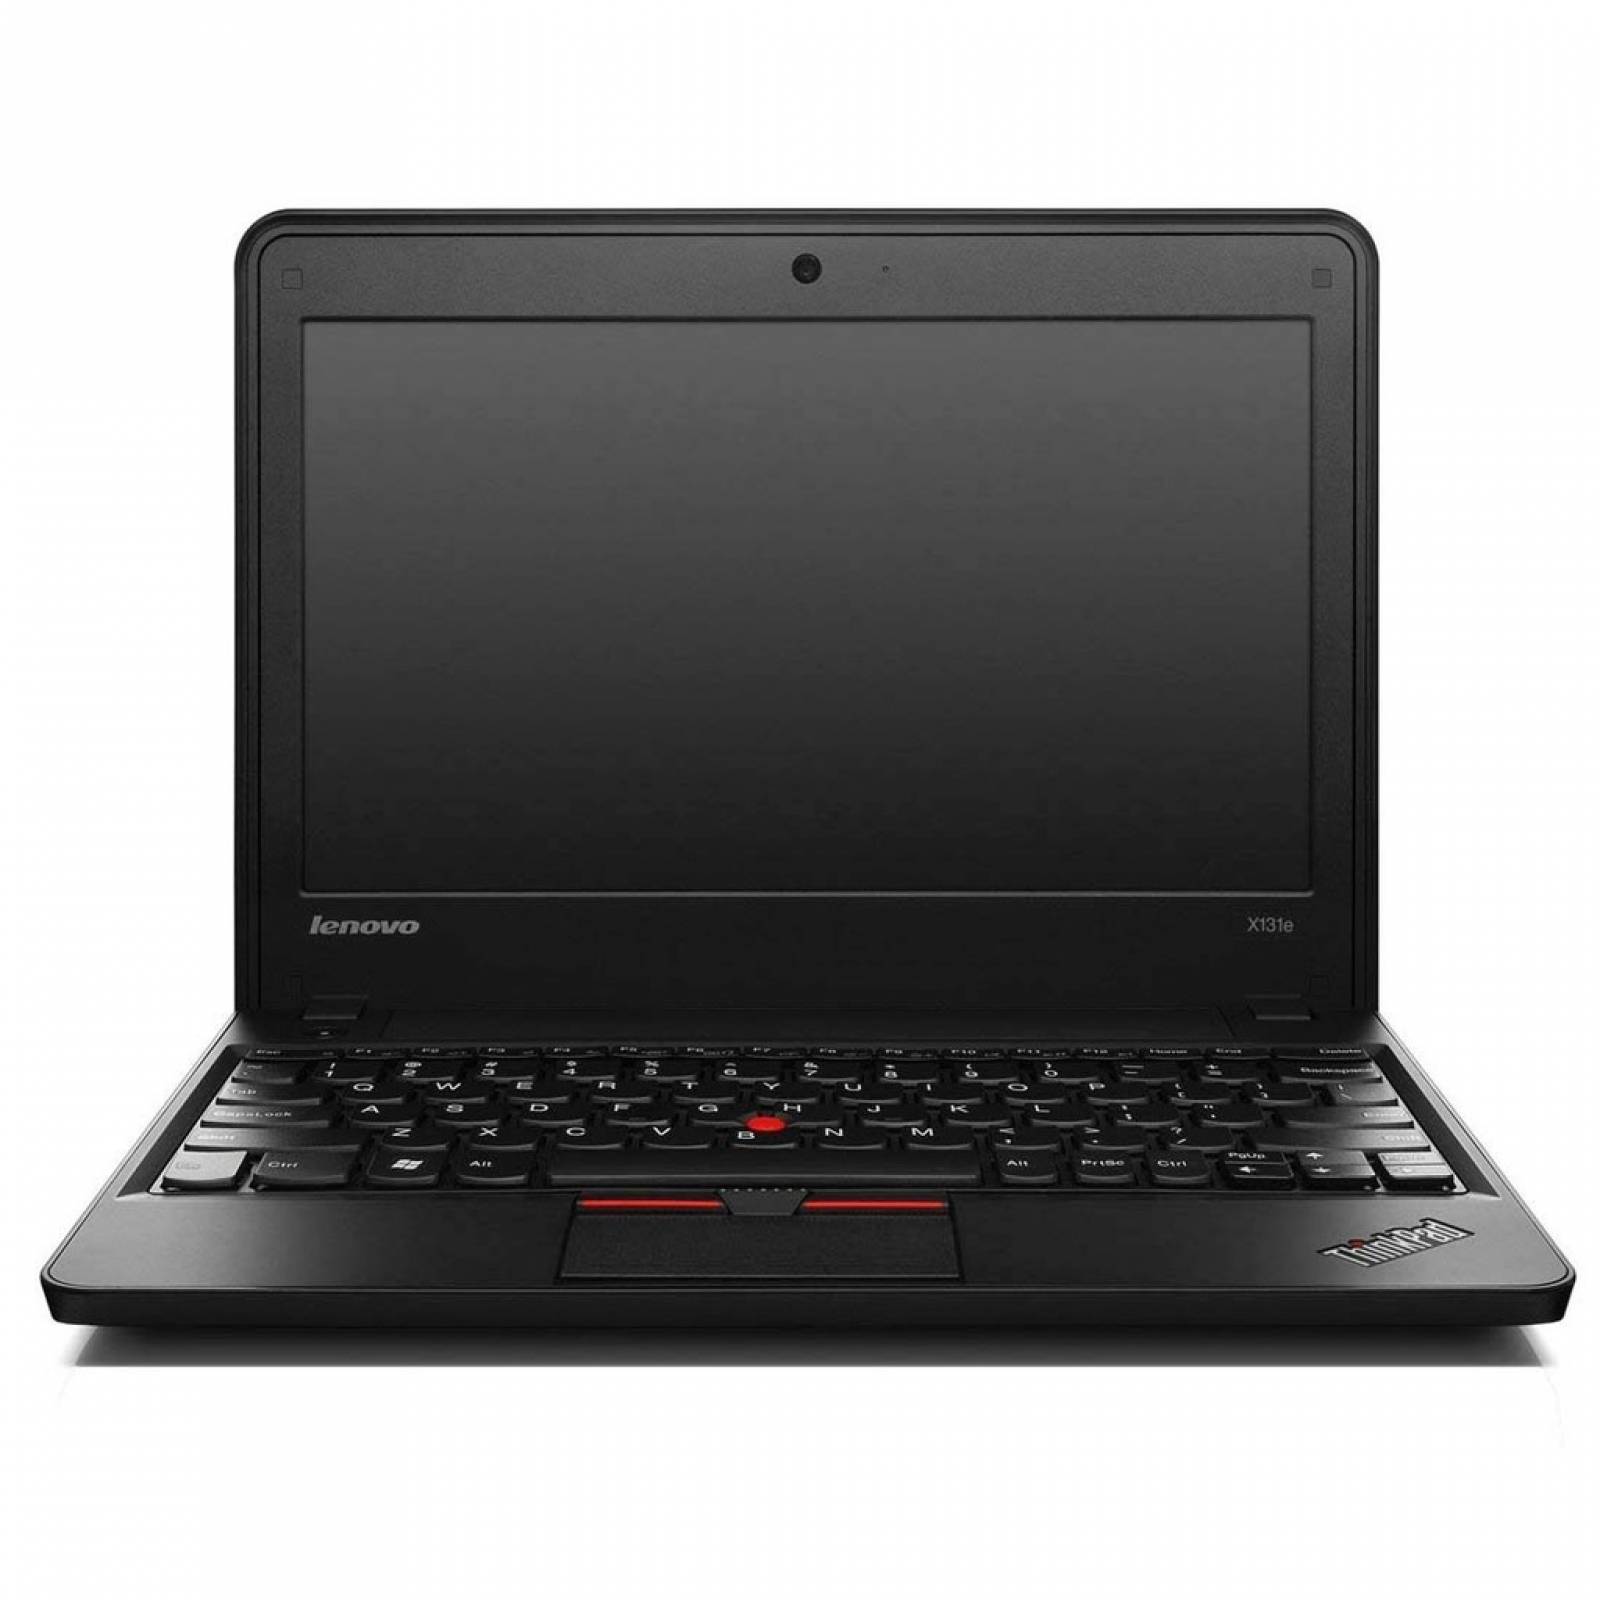 Laptop Lenovo Chromebook X131e 4GB Negra Reacondicionado